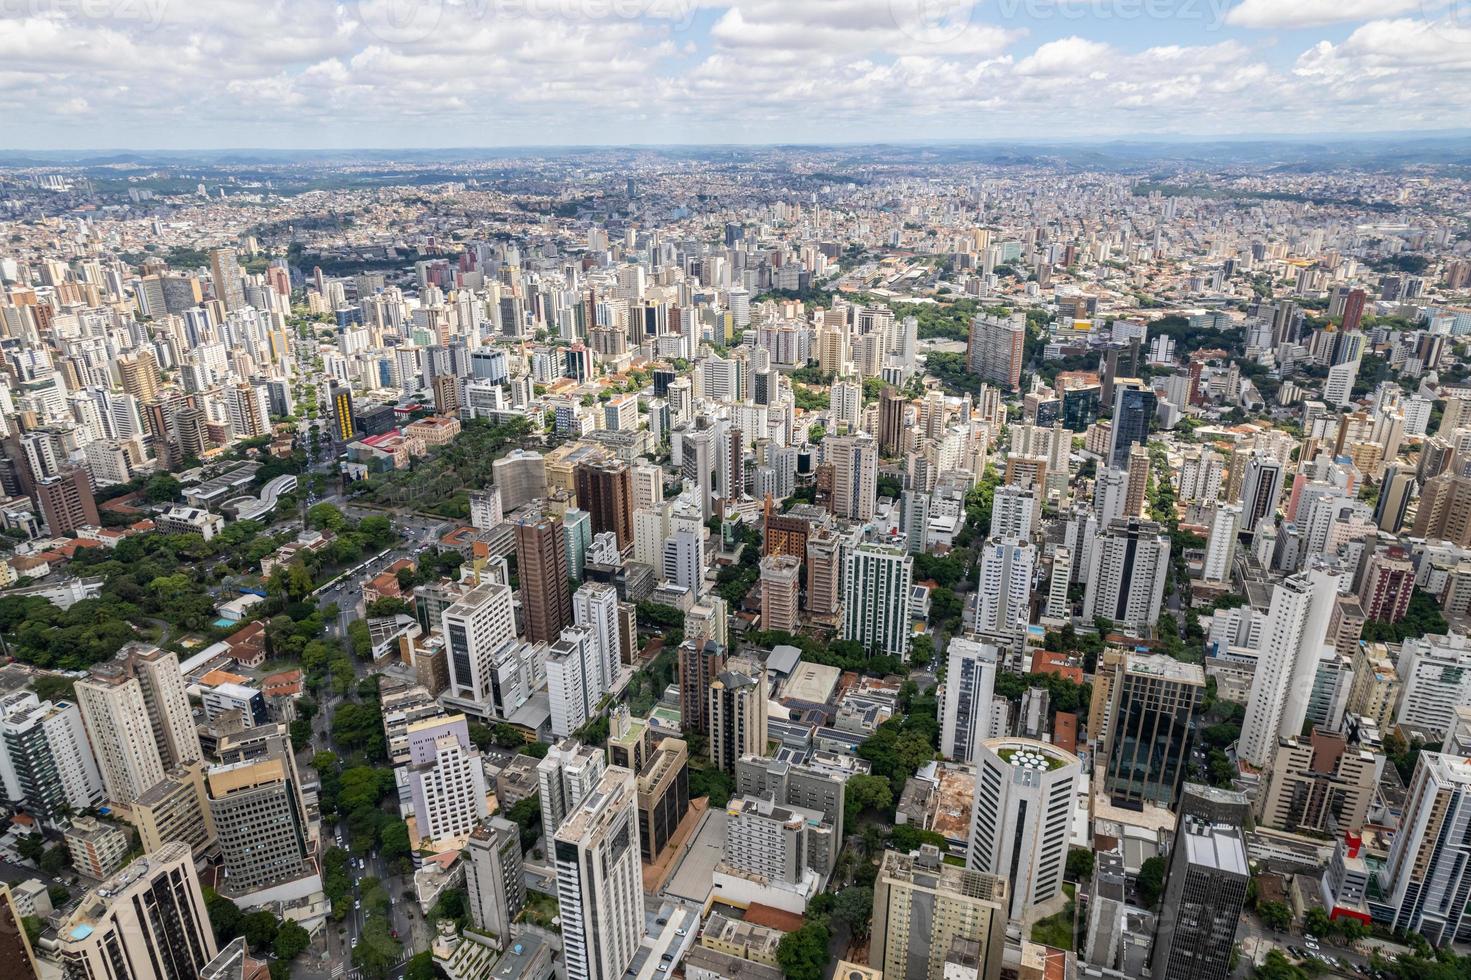 Luftaufnahme der Stadt Belo Horizonte in Minas Gerais, Brasilien. foto